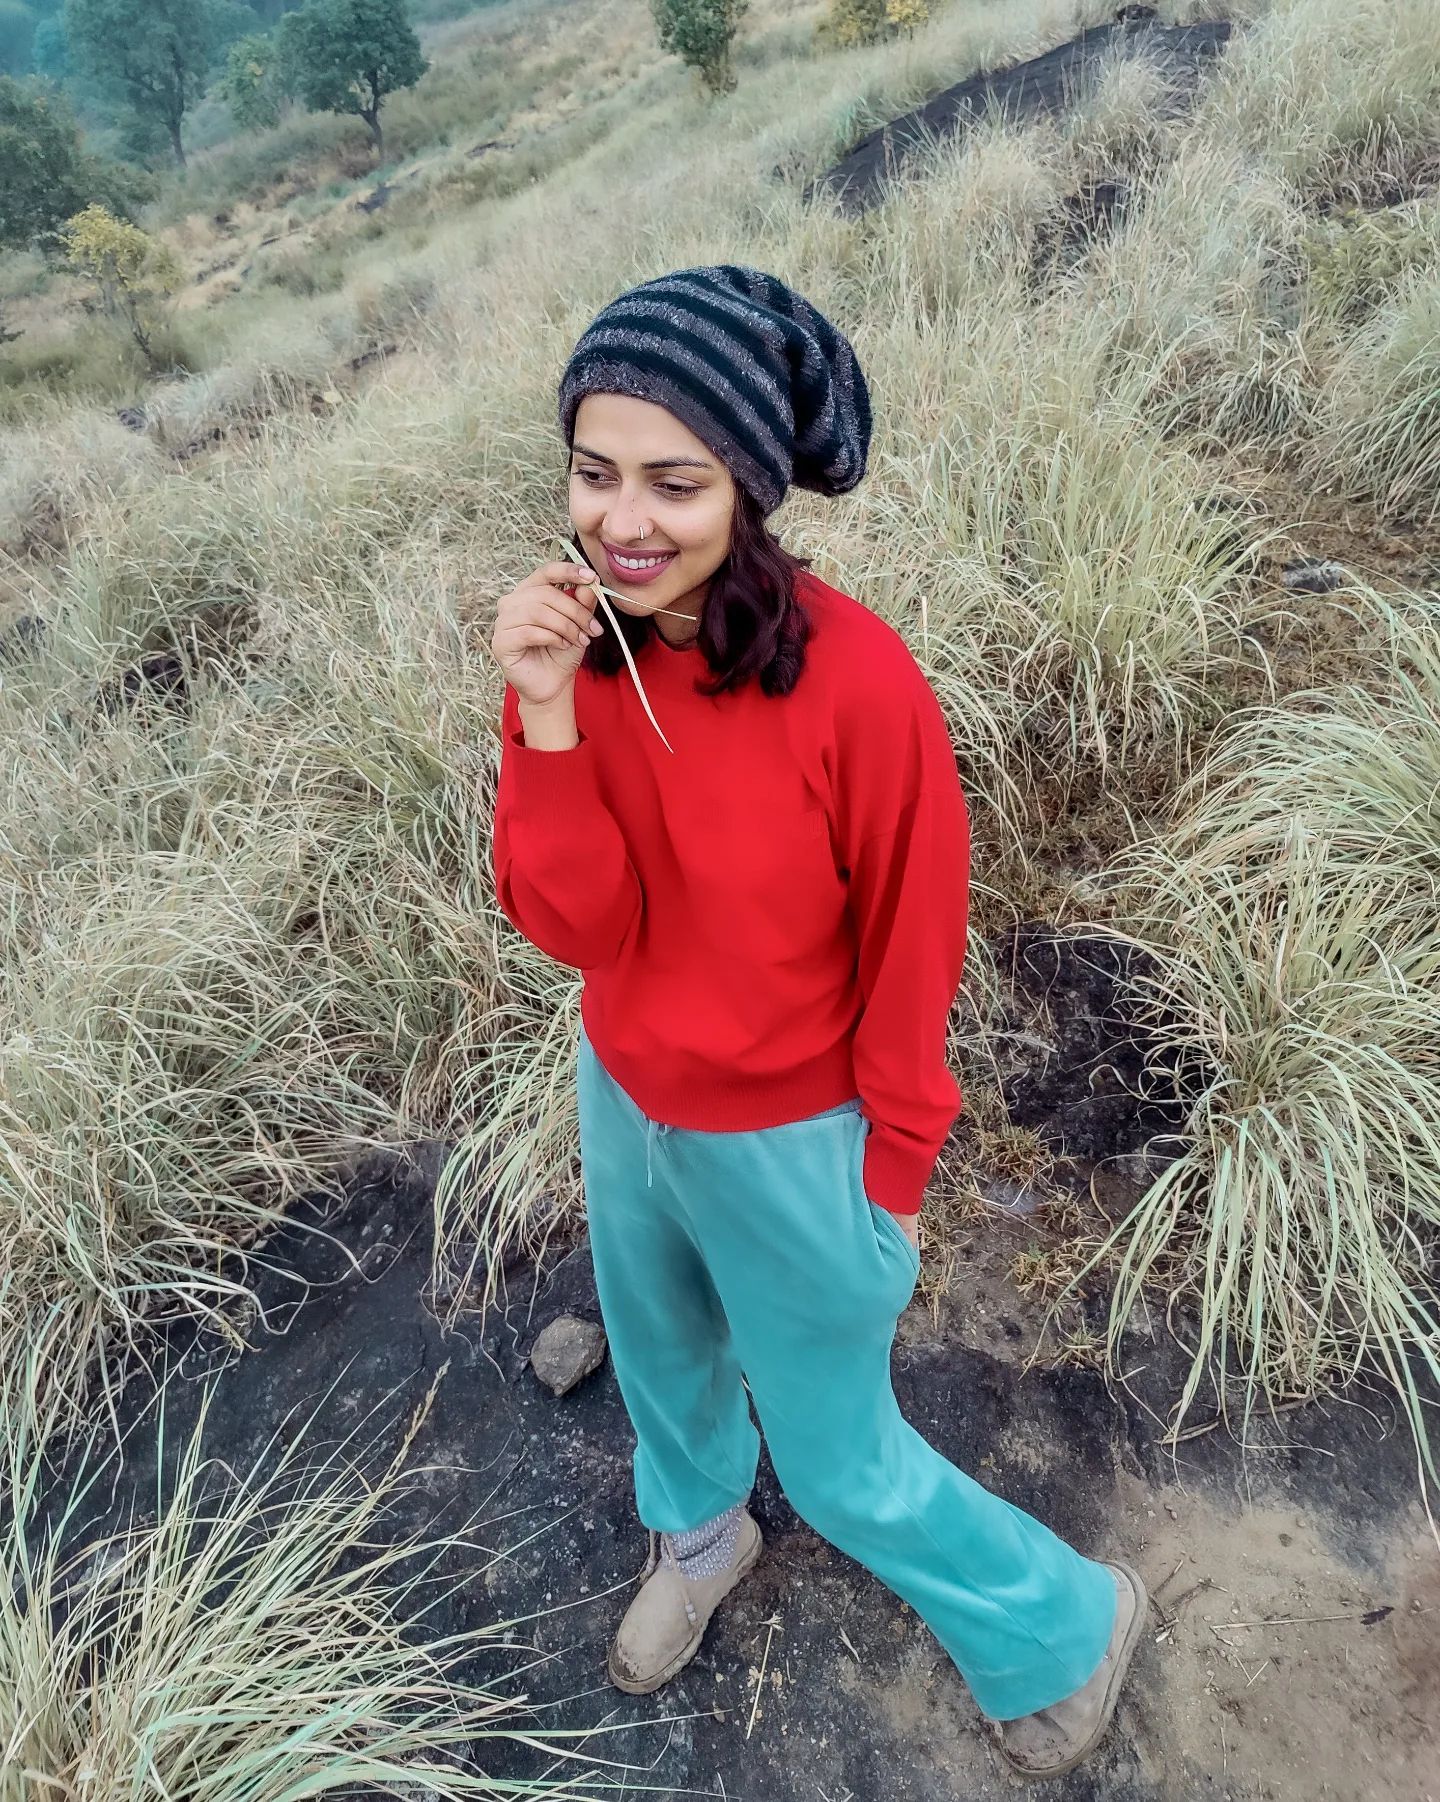  நடிகை அமலா பால் ( Image : Instagram @amalapaul)